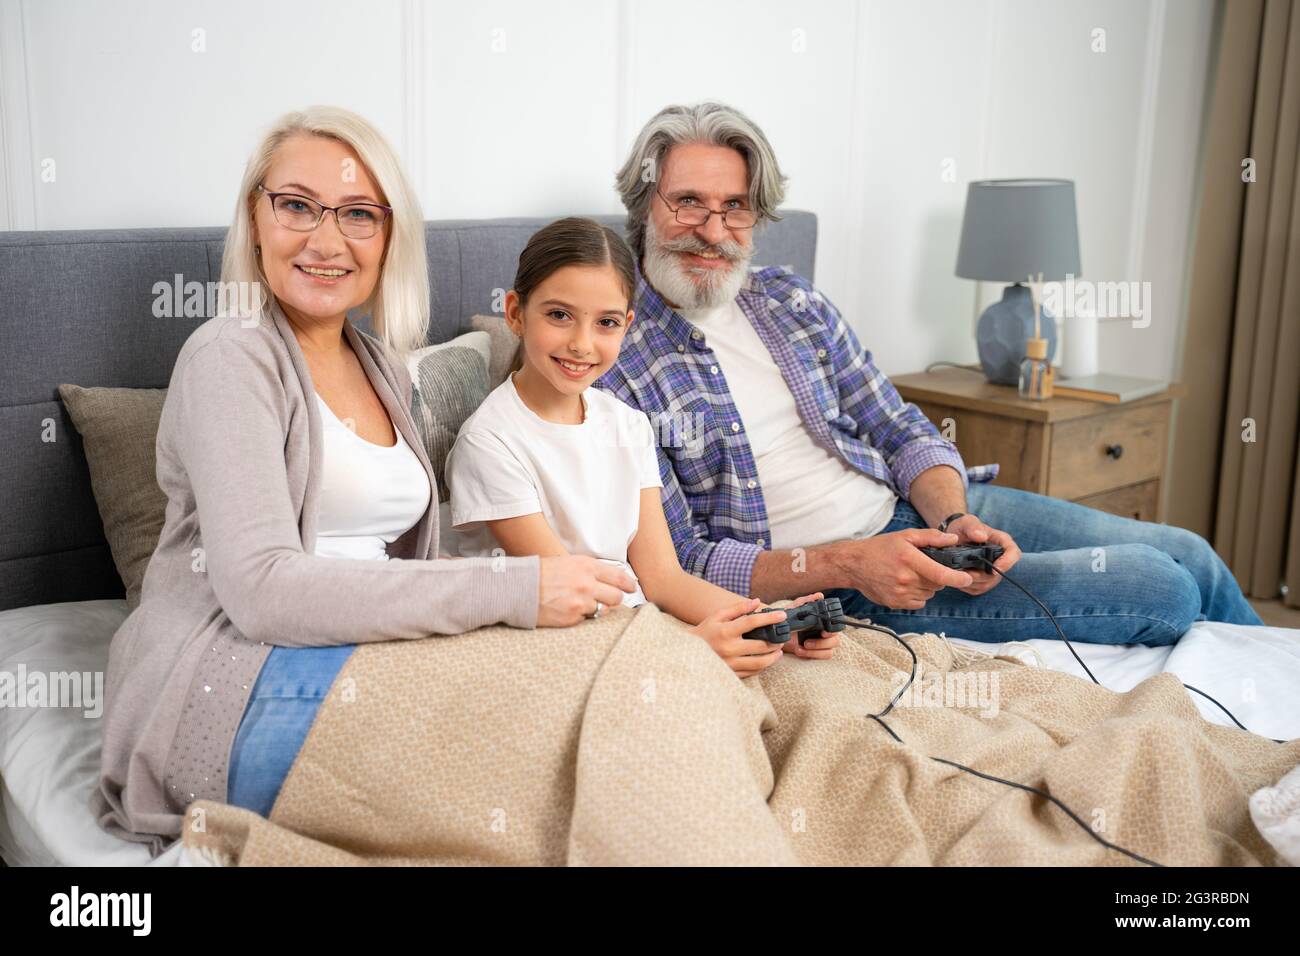 Porträt der entzückenden kleinen Enkelin und älteren Großeltern lächeln vor der Kamera, während sie gemeinsam Videospiele spielen, auf dem Bett sitzen und am Wochenende zu Hause die Freizeit der Familie genießen Stockfoto